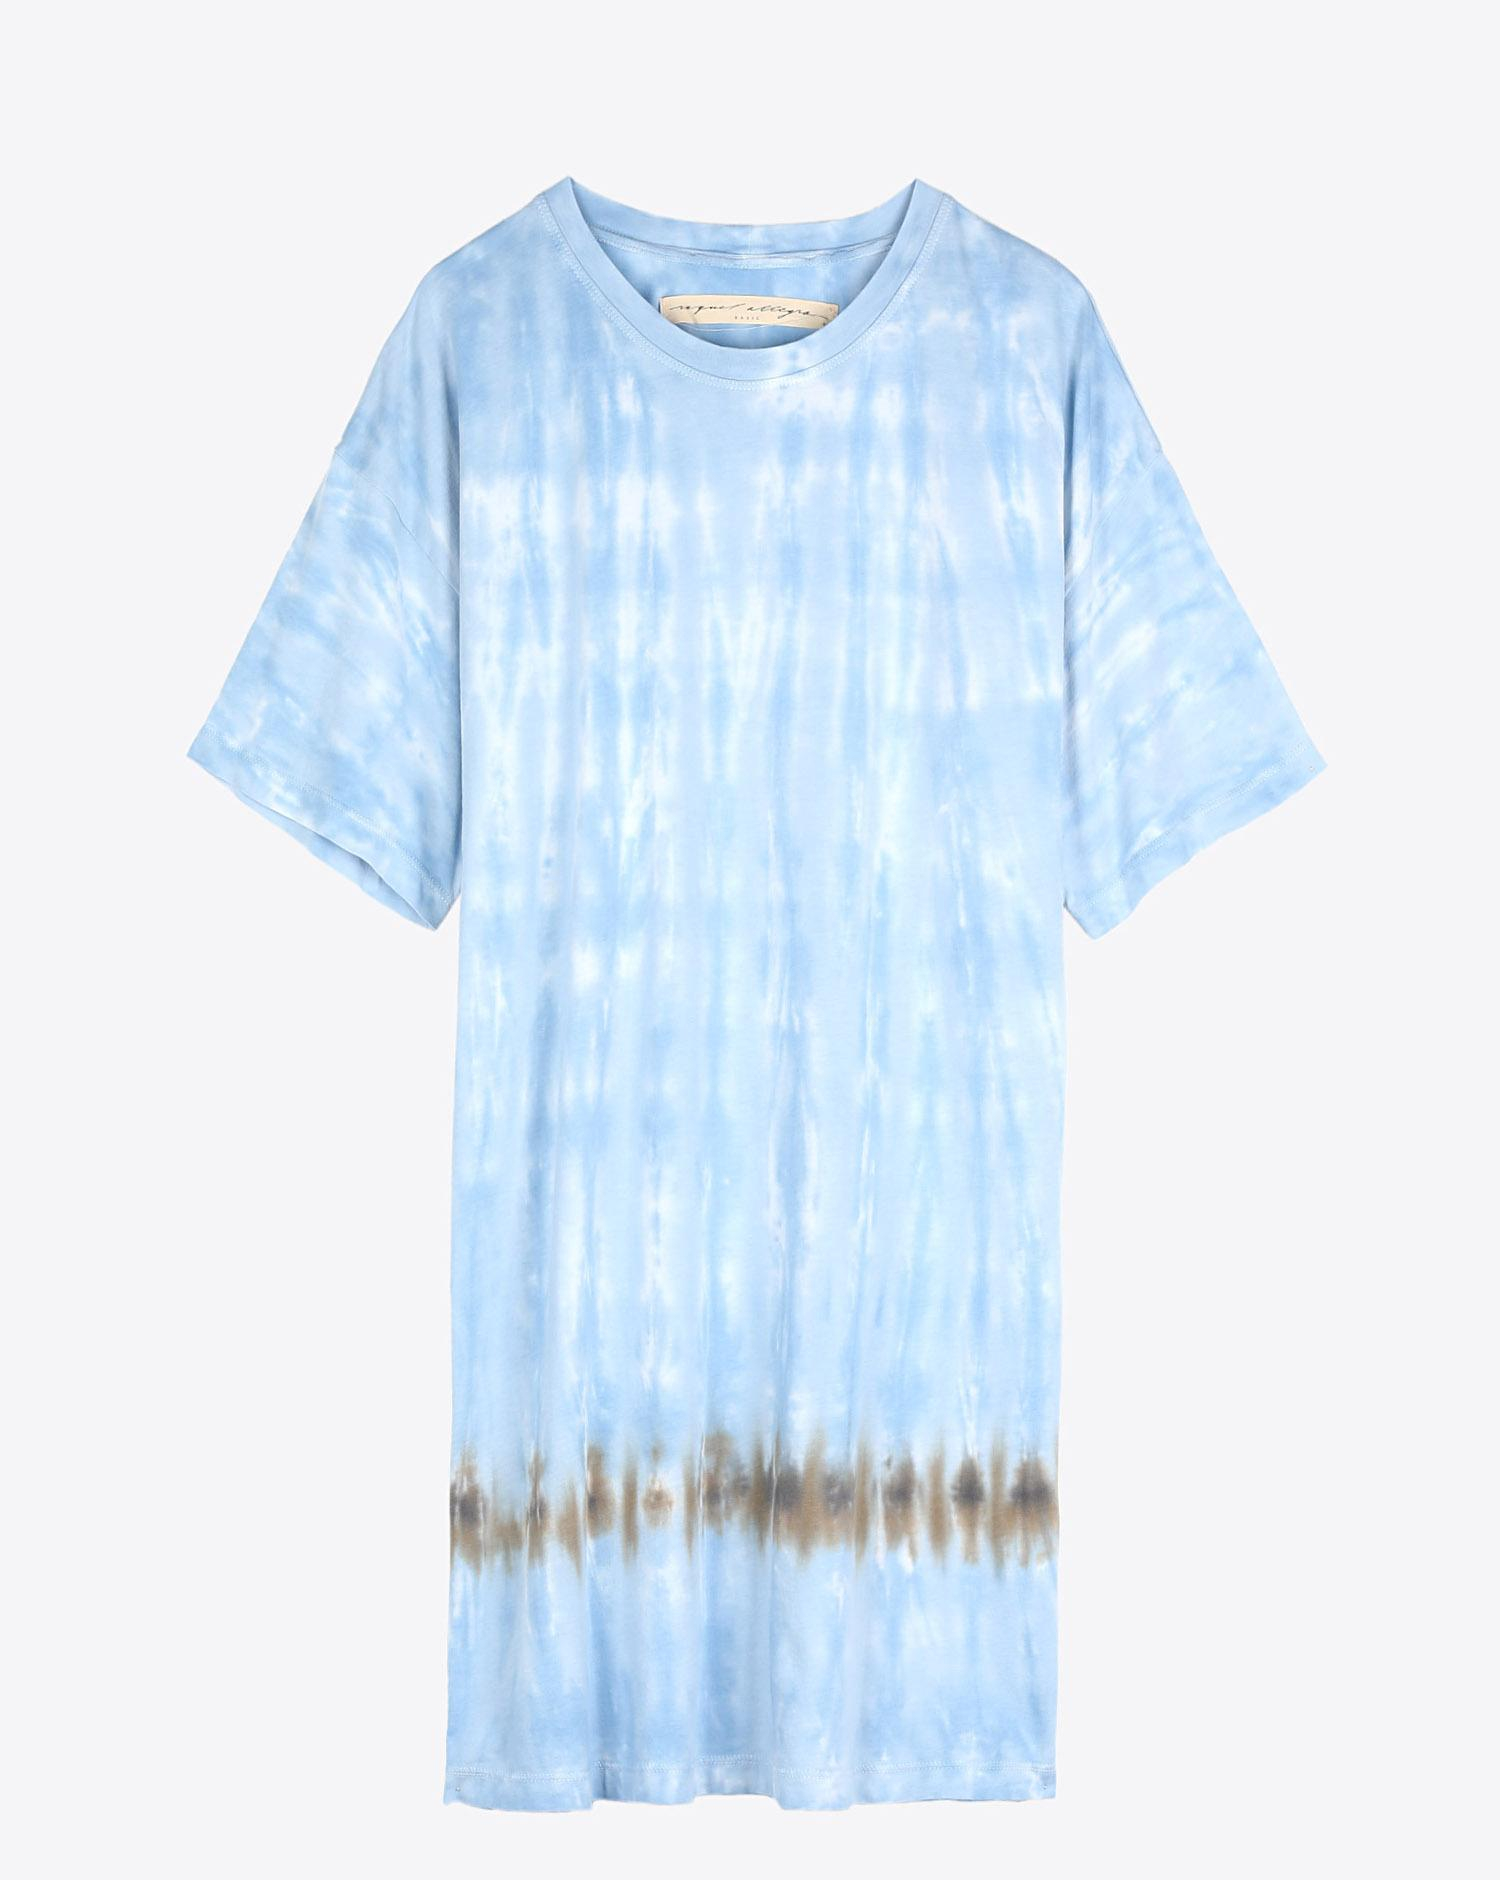 Raquel Allegra Pré-Collection T Shirt Dress - Blue Stripes  